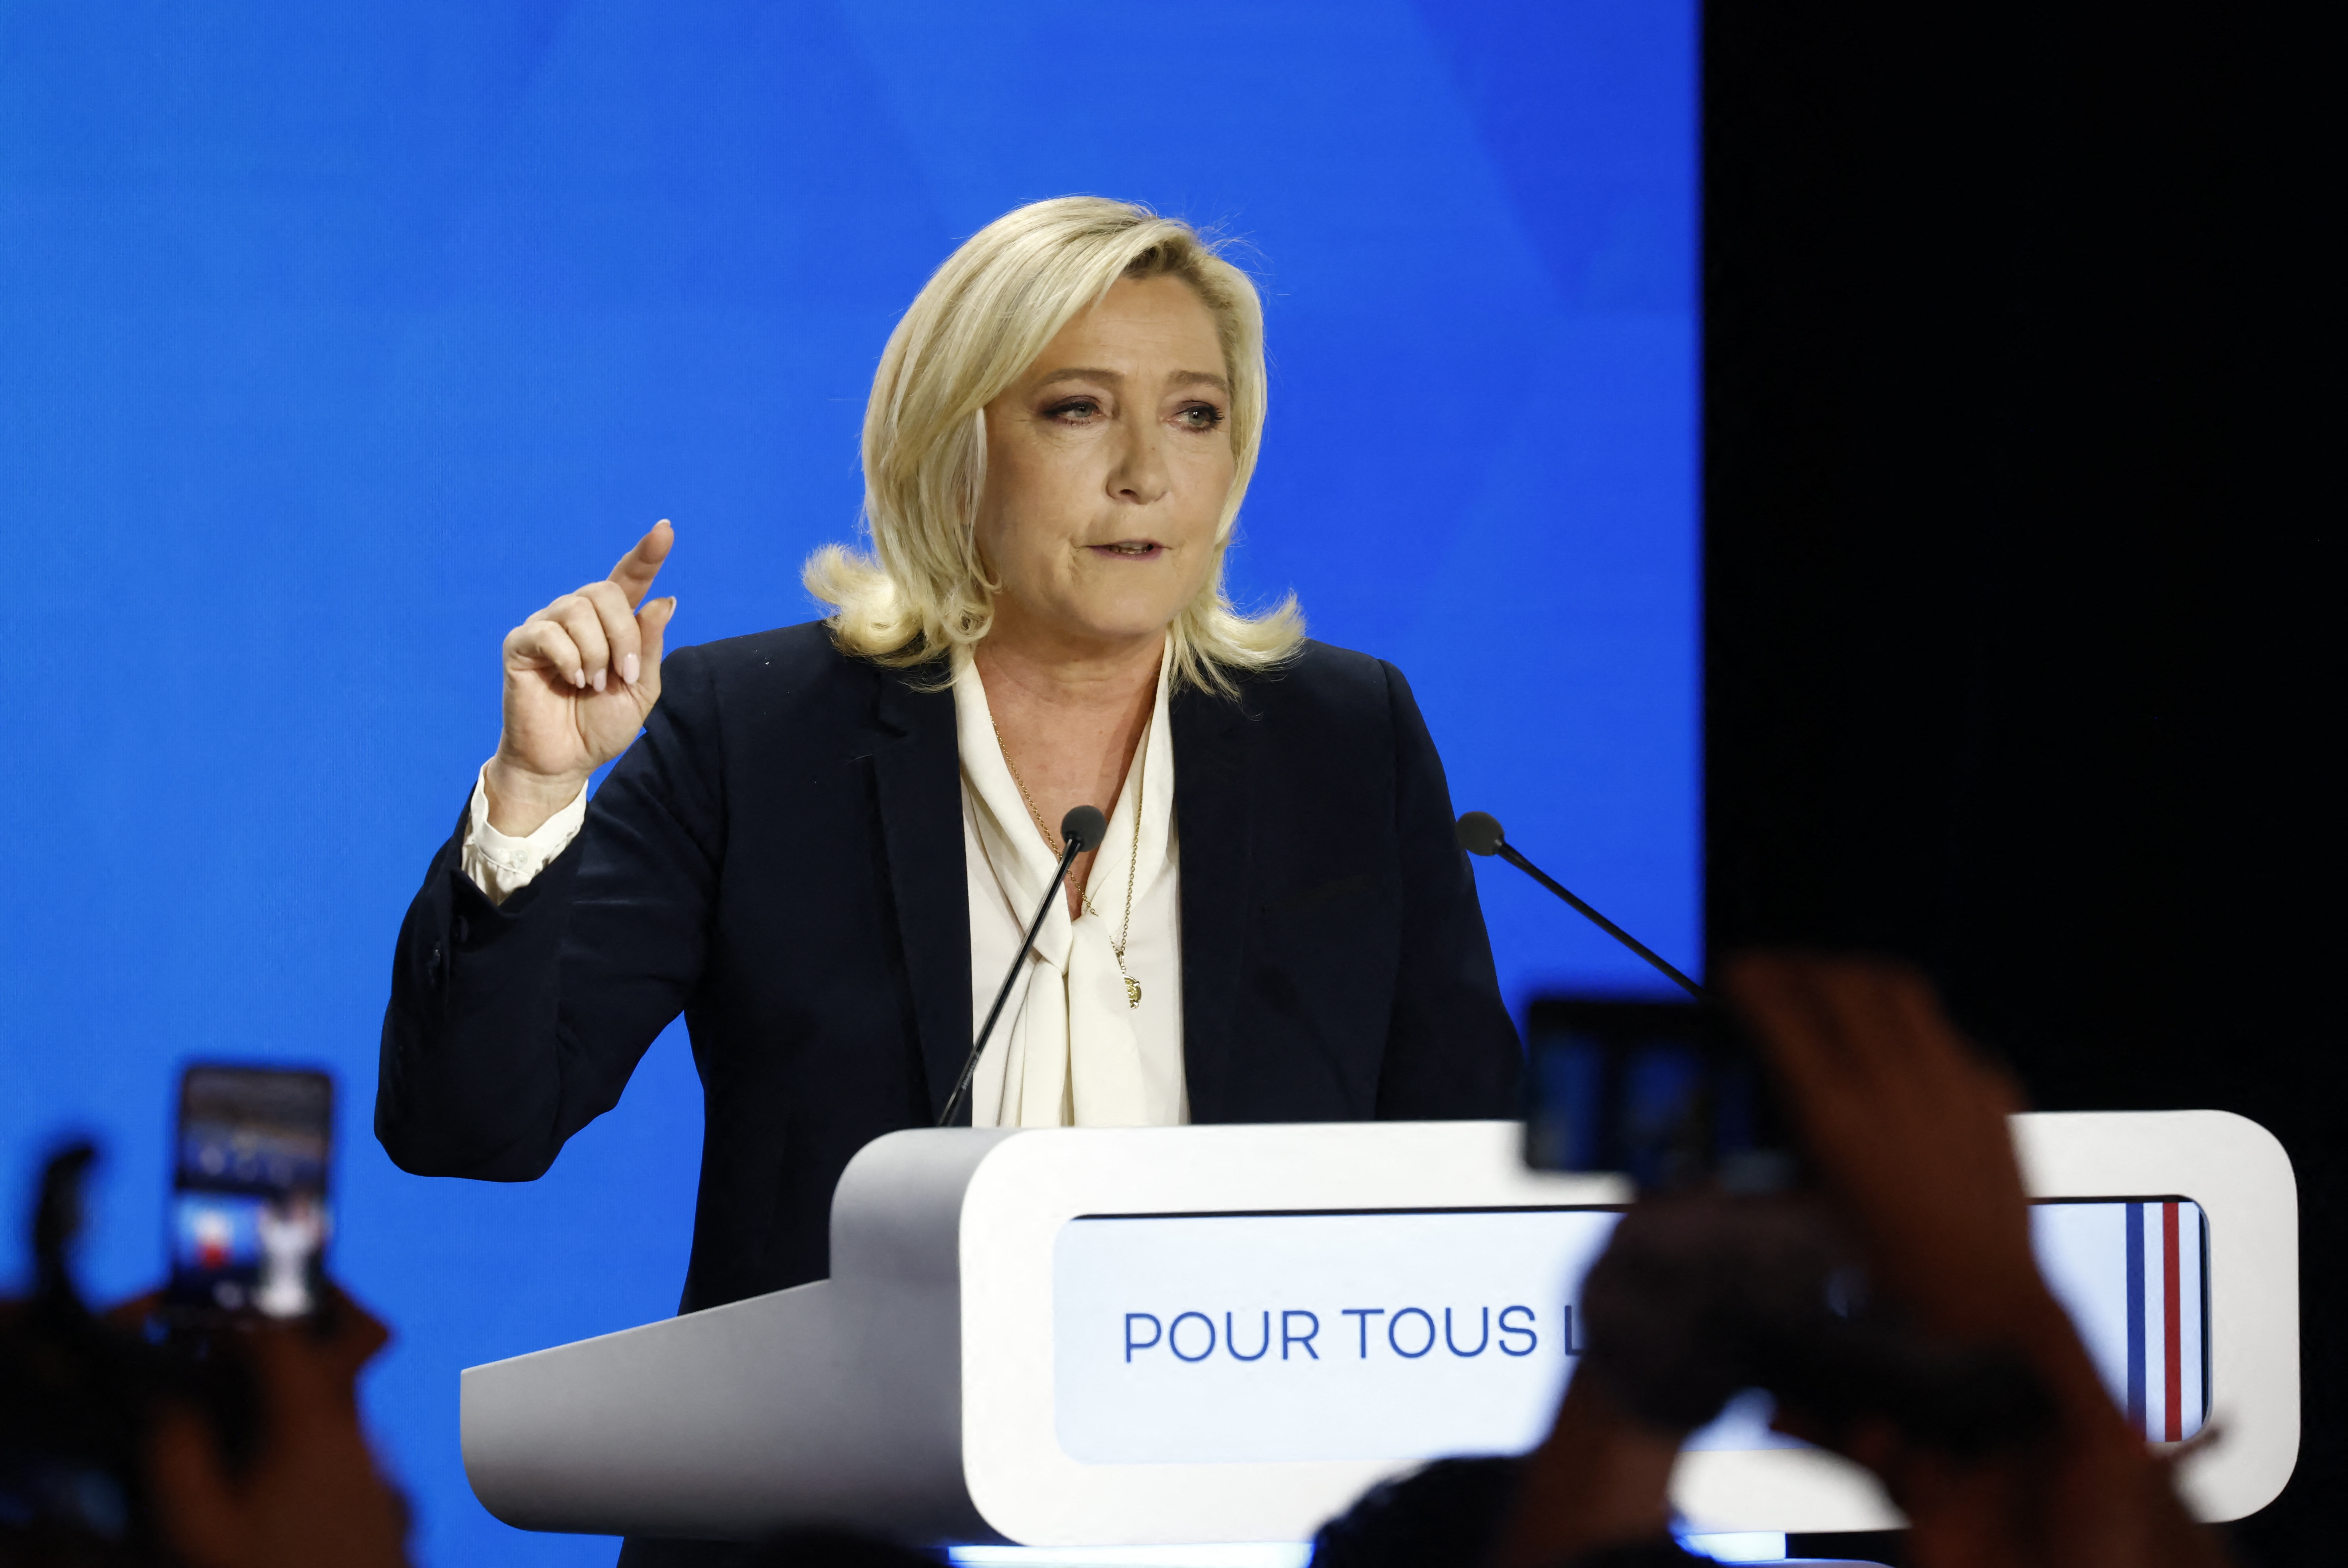 Au-delà de la victoire de Macron, le vote pour l'extrême droite étend ses territoires